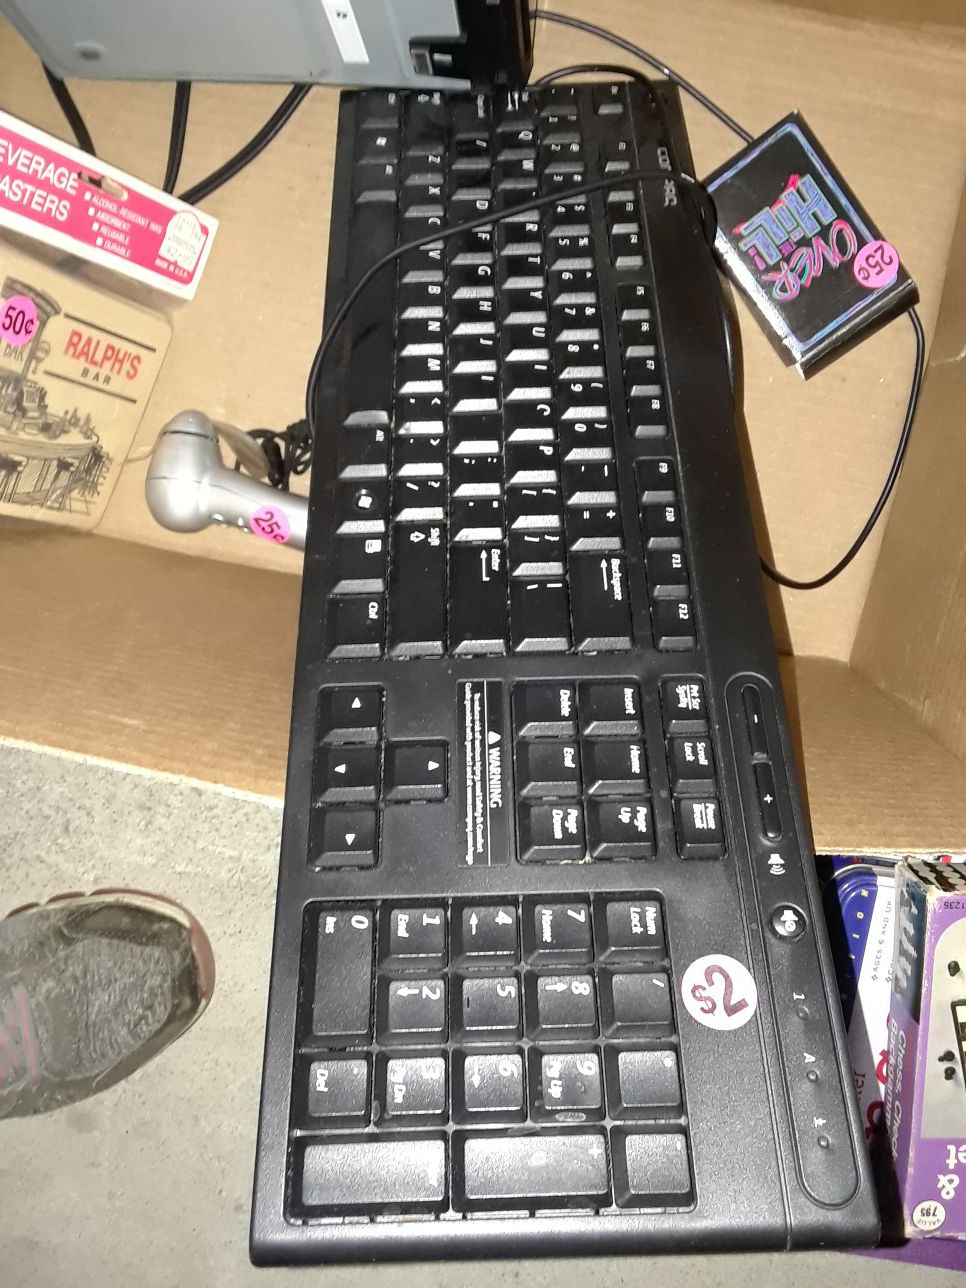 Computer keyboard $2